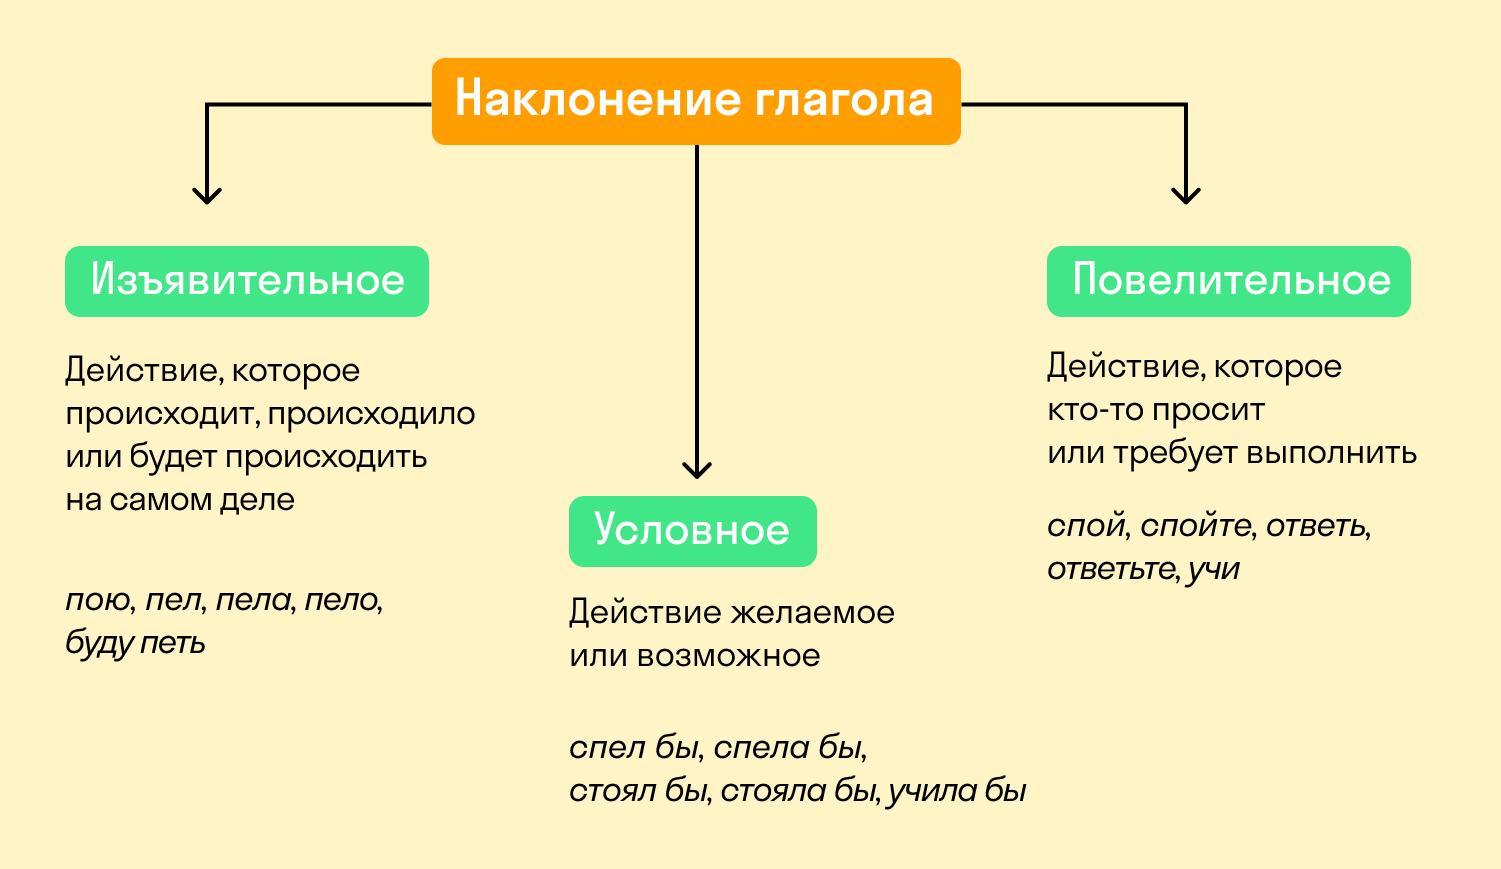 Наклонение глаголов в русском язык - Таблица и примеры